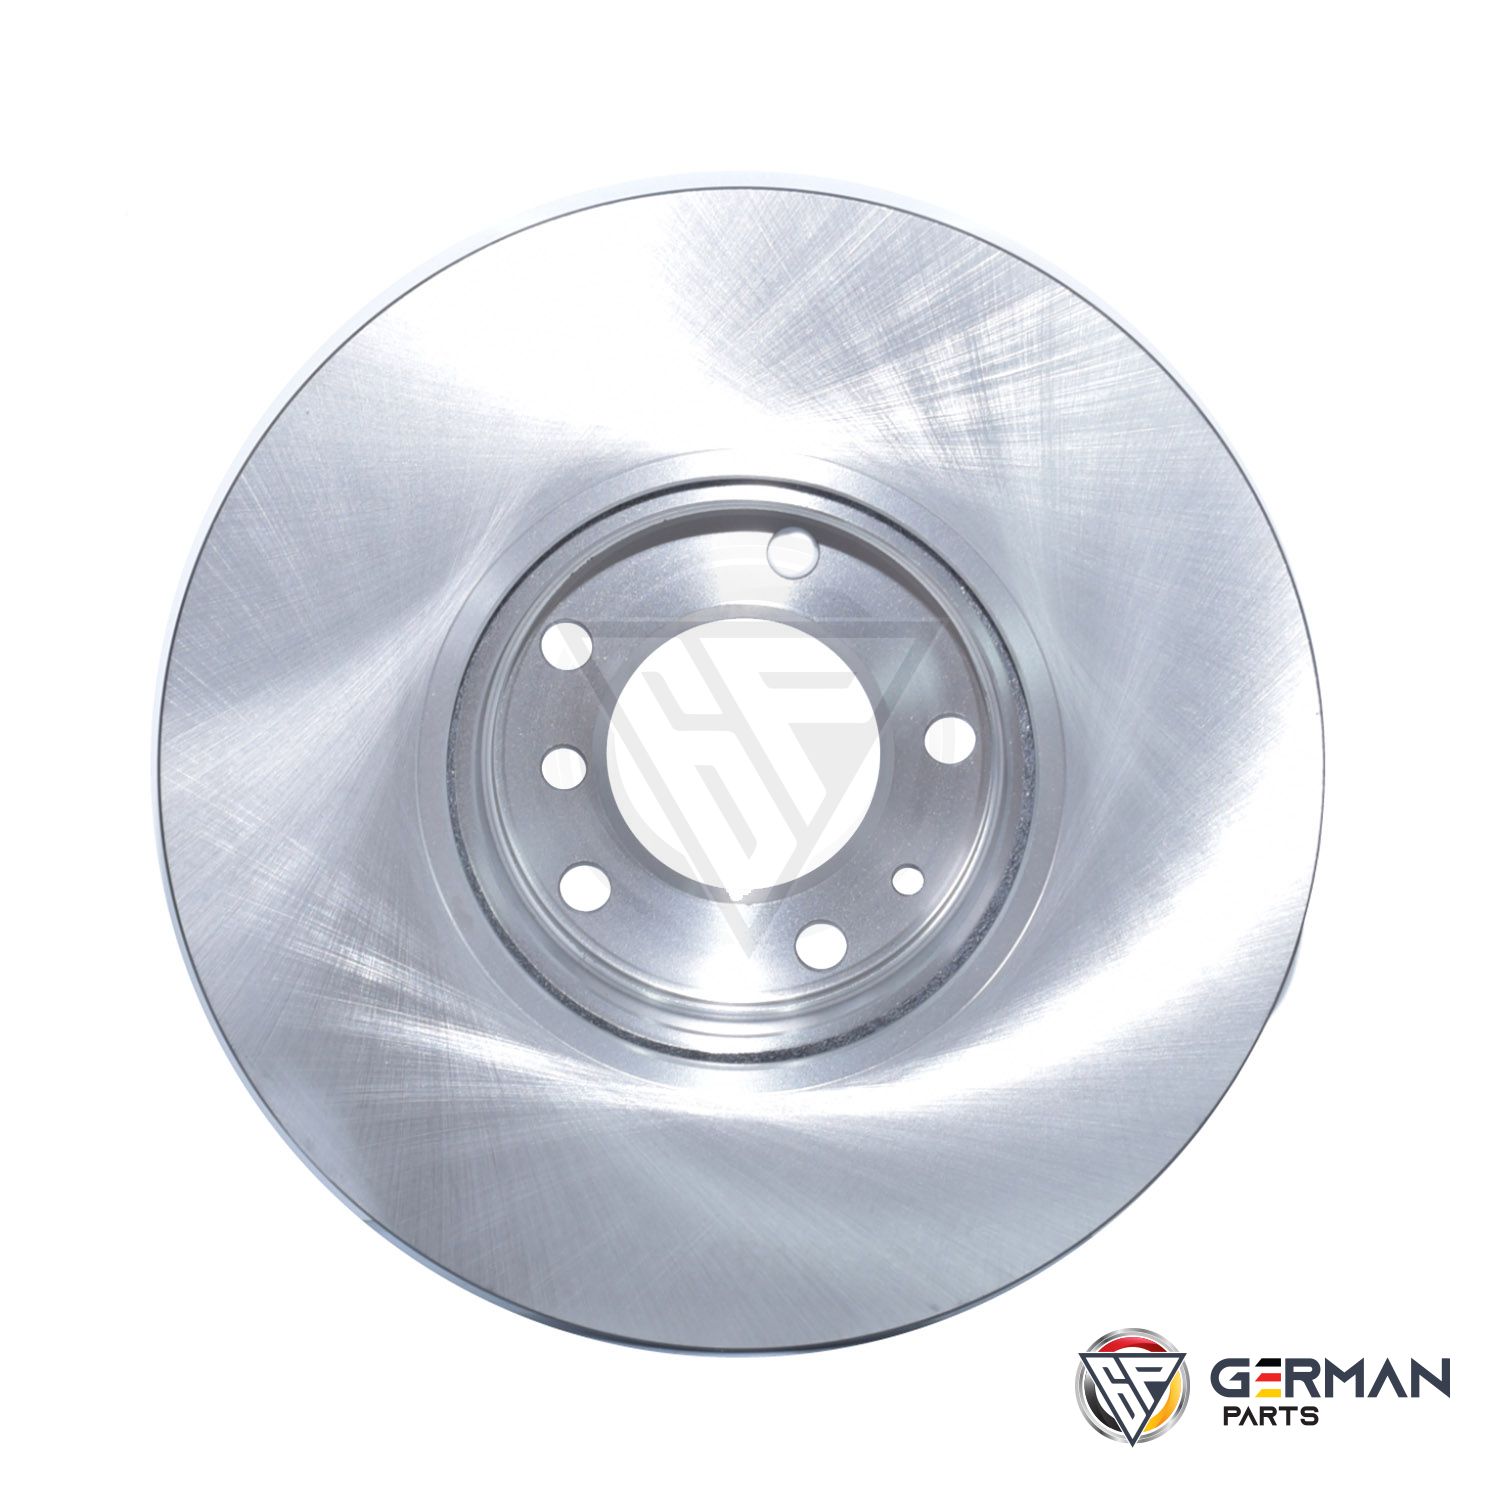 Buy TRW Front Brake Disc 34111159895 - German Parts